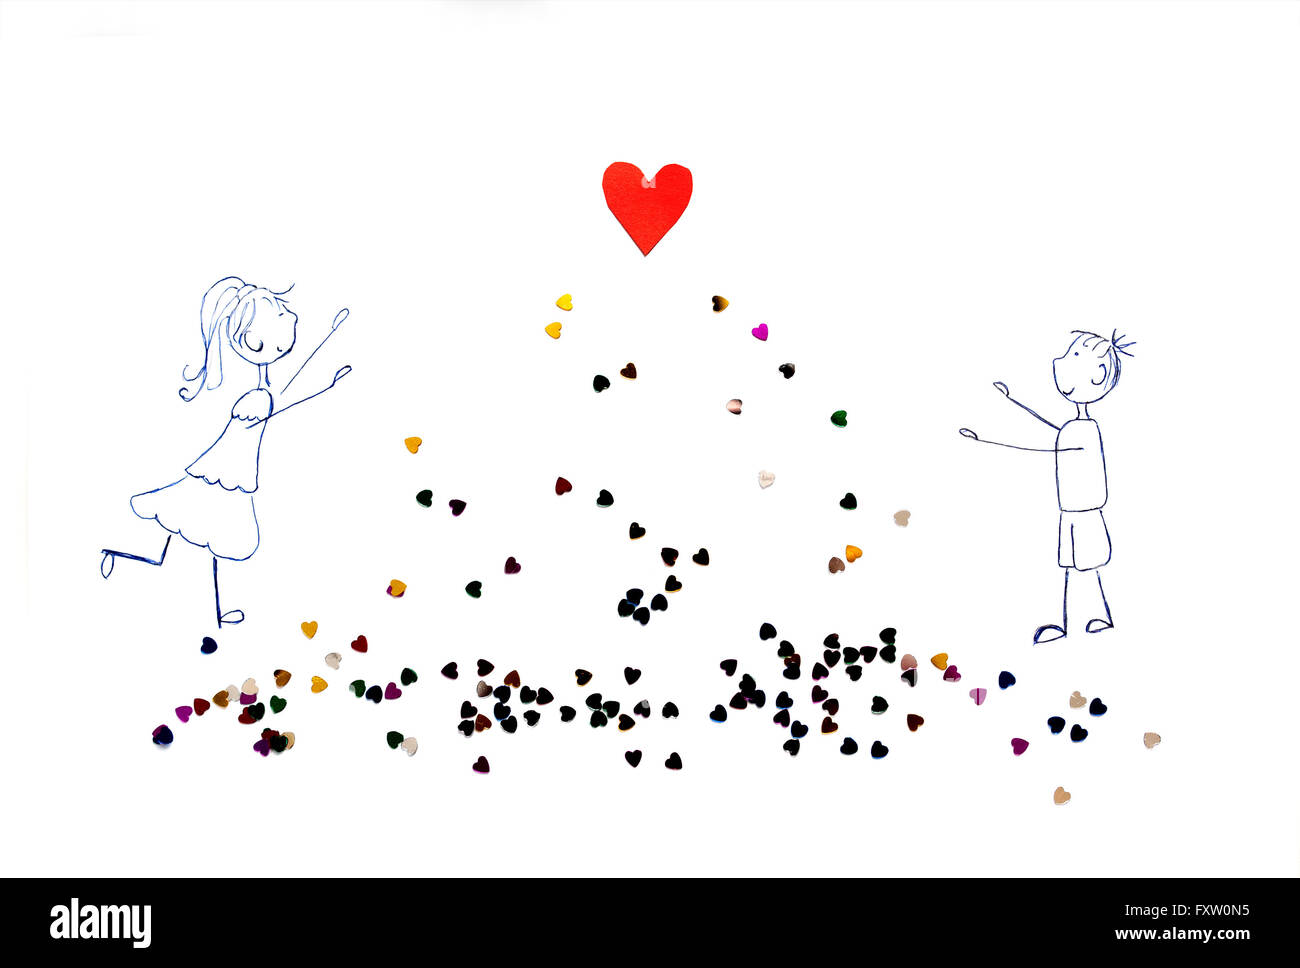 Illustration de fille et garçon tirant ses mains à coeur rouge Banque D'Images